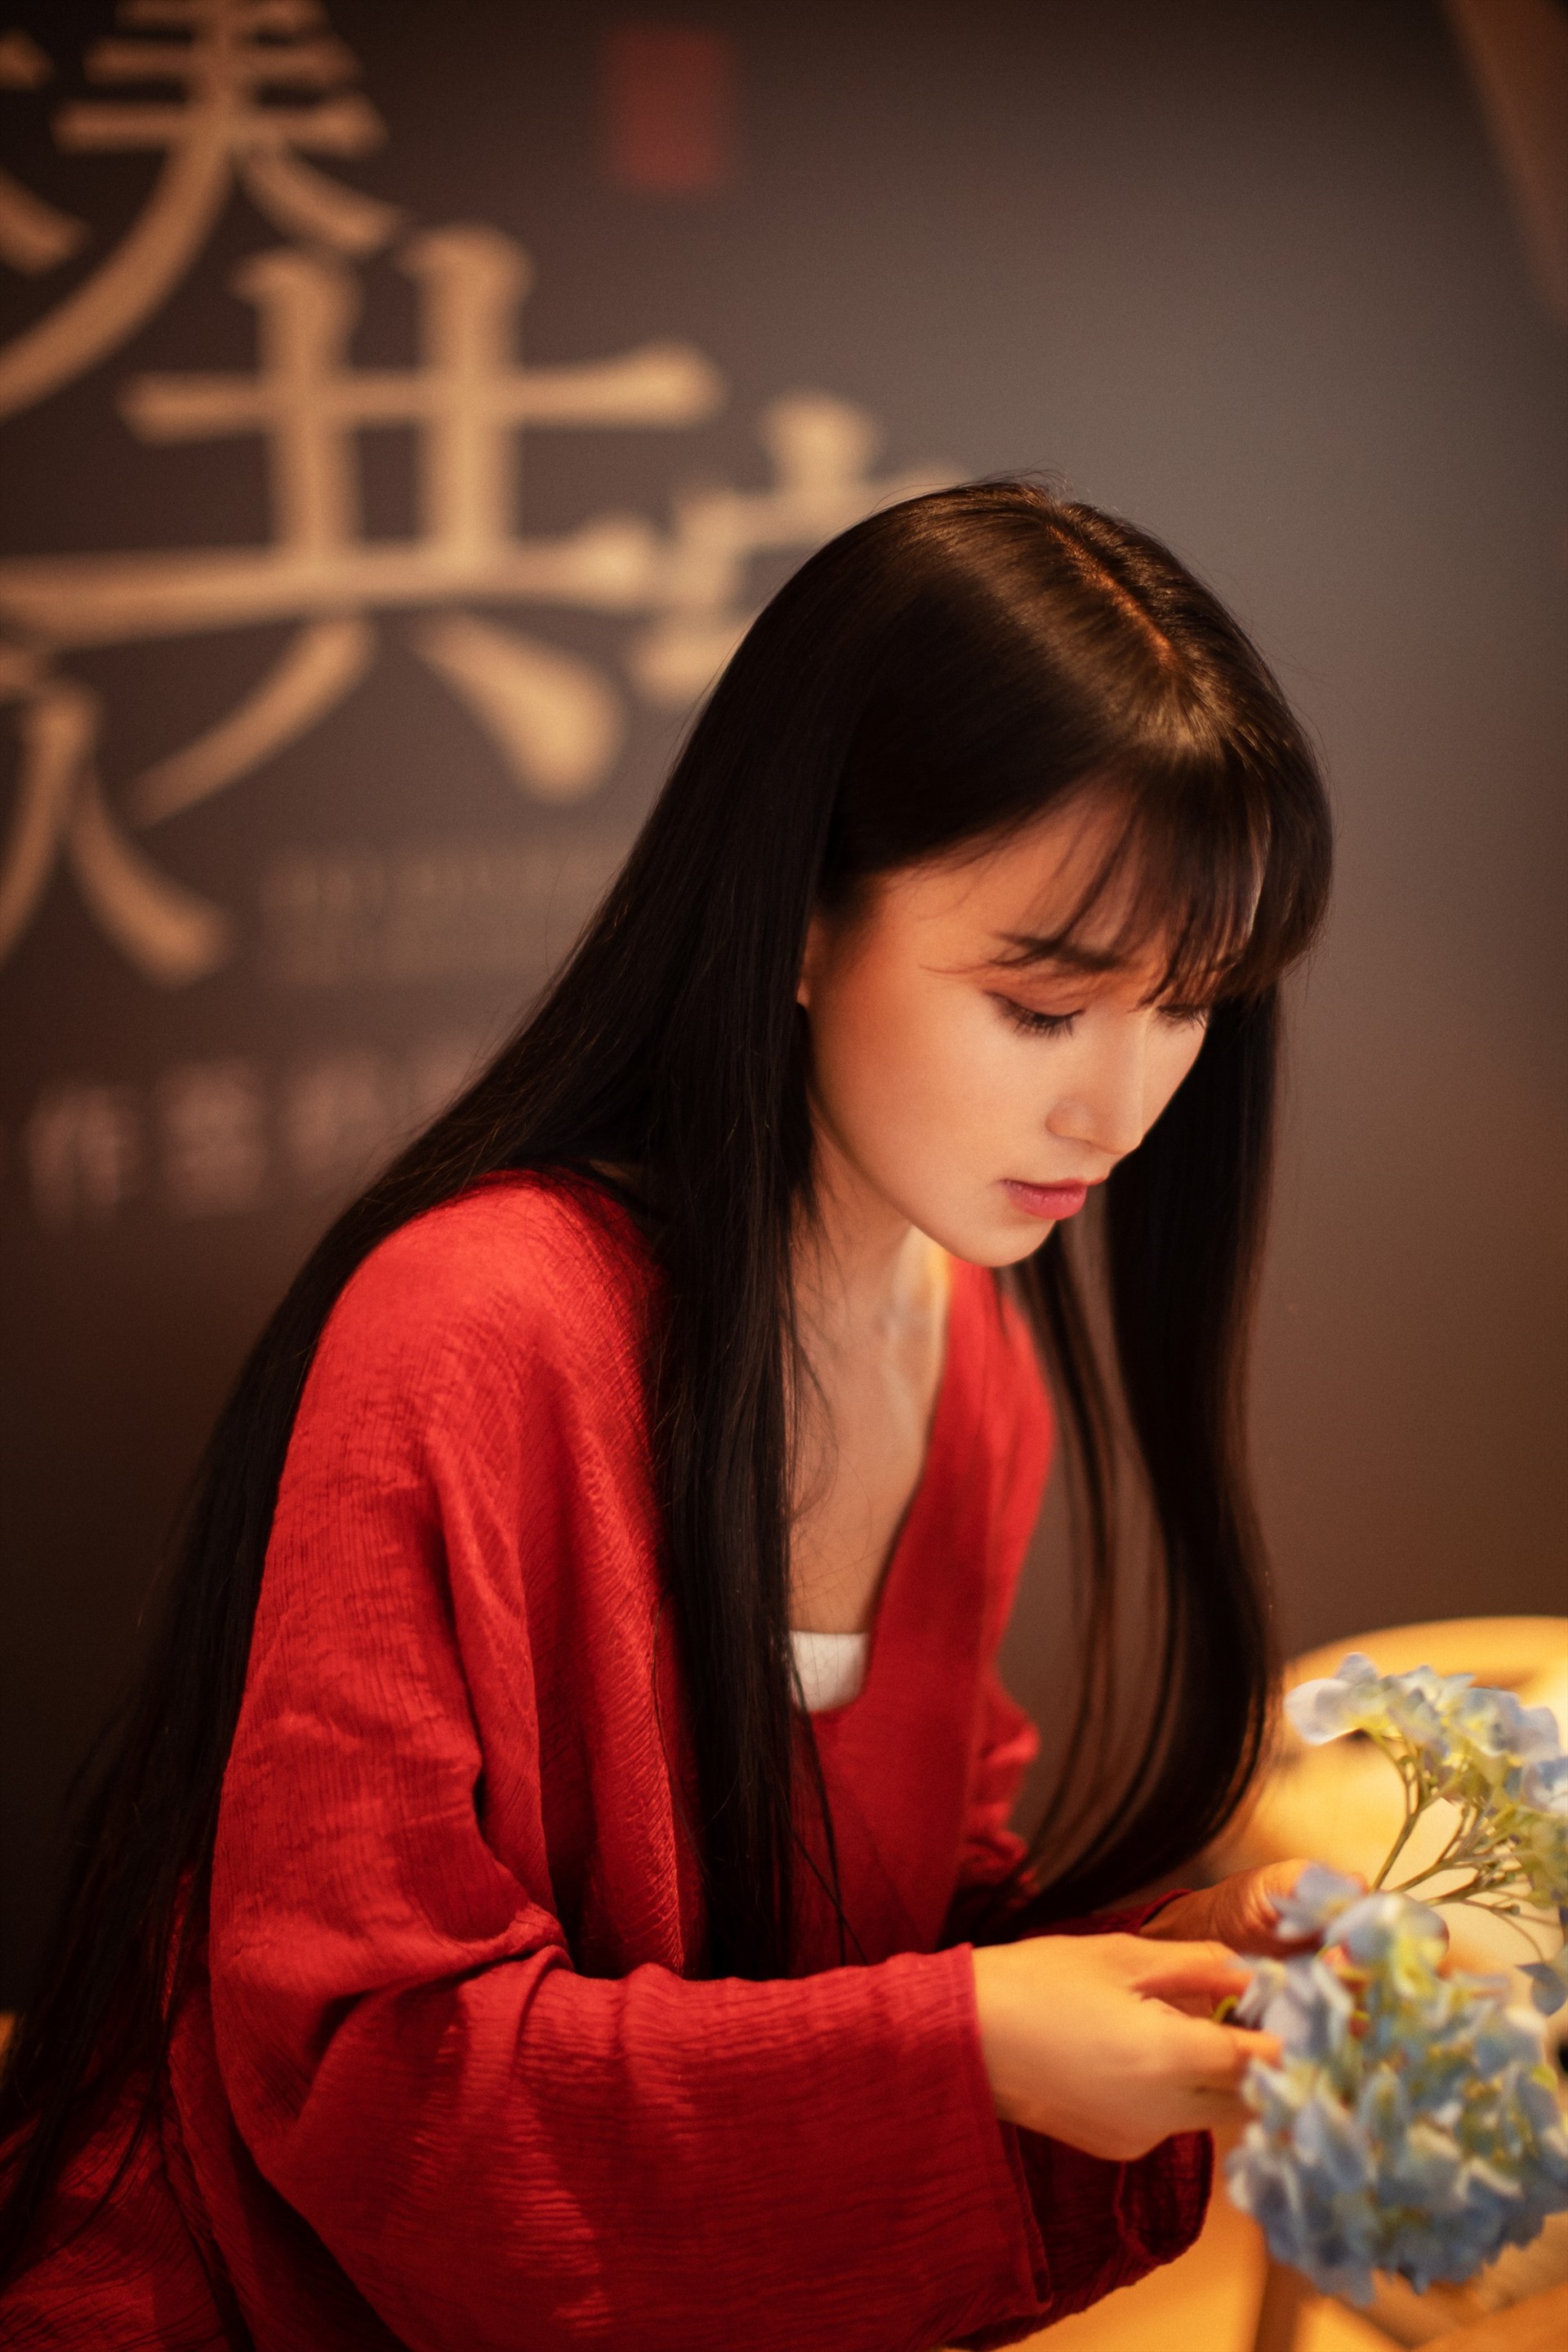 Ngoài nội dung hấp dẫn, điều khiến các video của Tử Thất nhận được nhiều sự yêu mến của dân mạng là vẻ ngoài xinh xắn của cô. 9X sở hữu gương mặt ưa nhìn cùng thân hình cân đối. Ảnh: Weibo